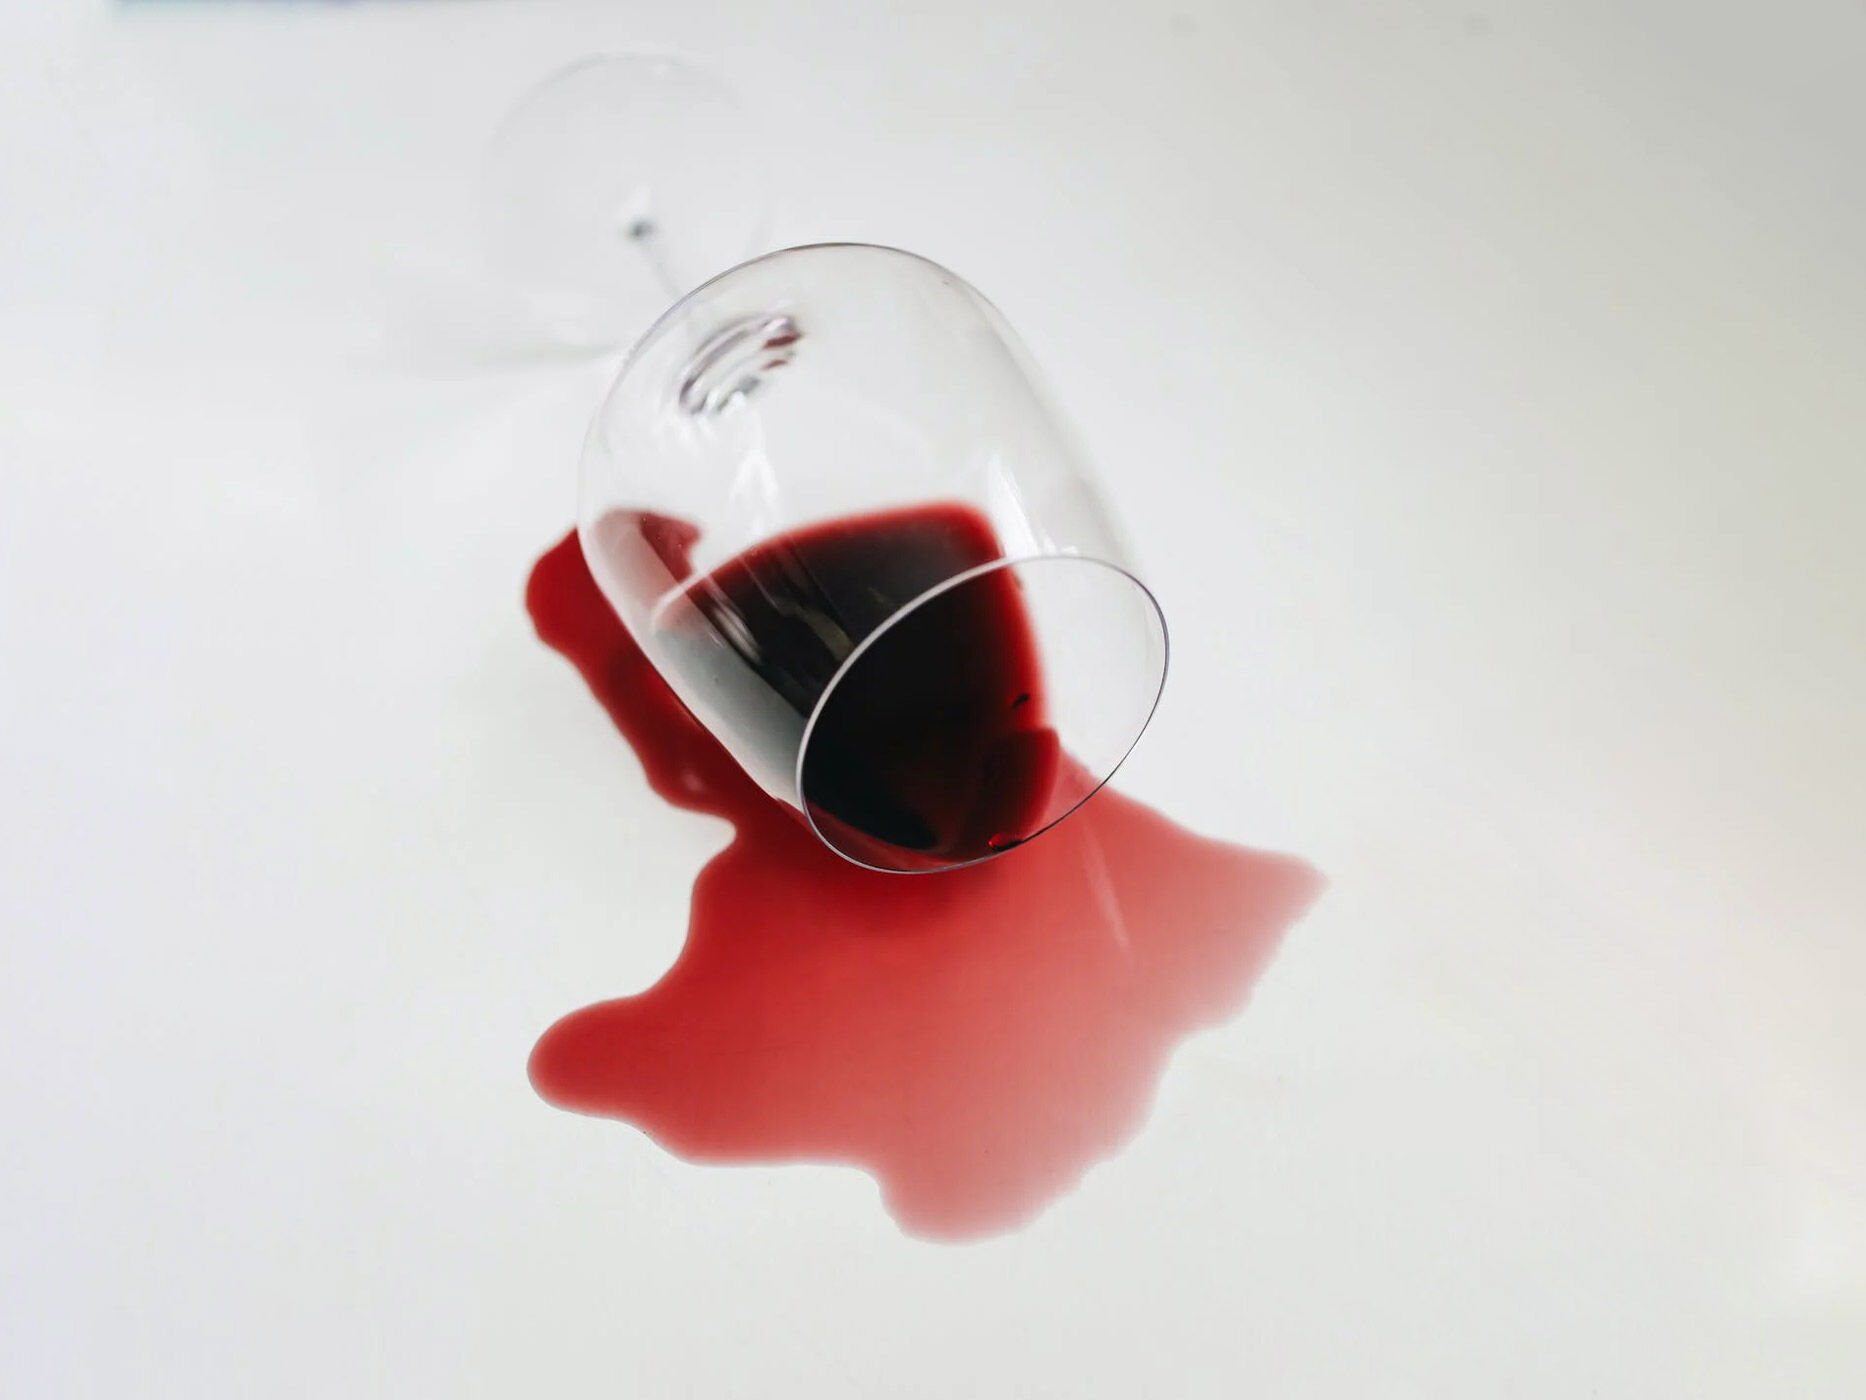 Rotwein fließt aus einem Weinglas auf den Tisch